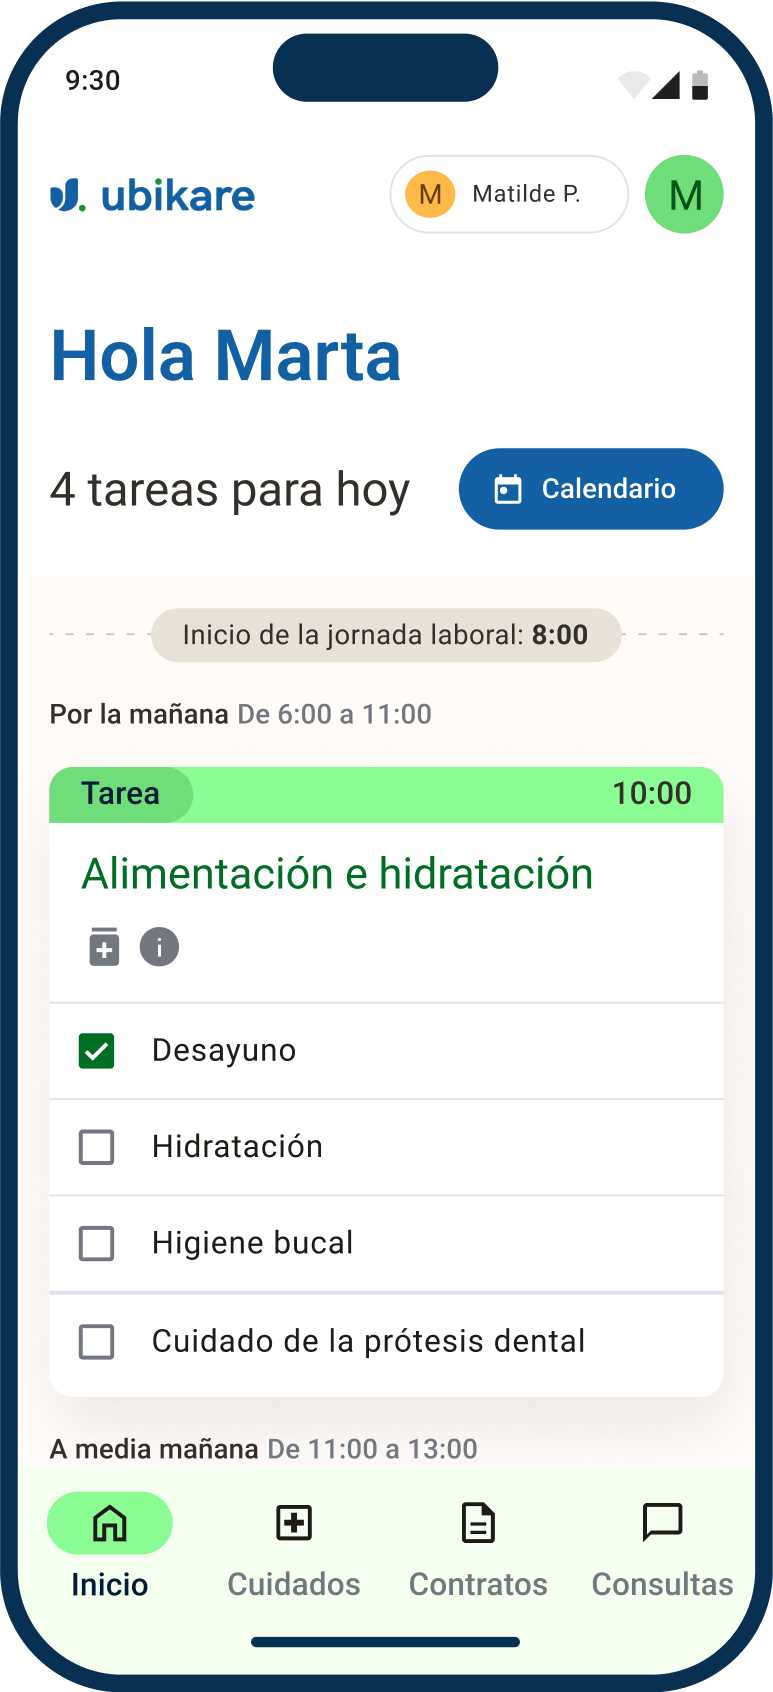 App de Ubikare, pantalla de inicio mostrando lista de tareas